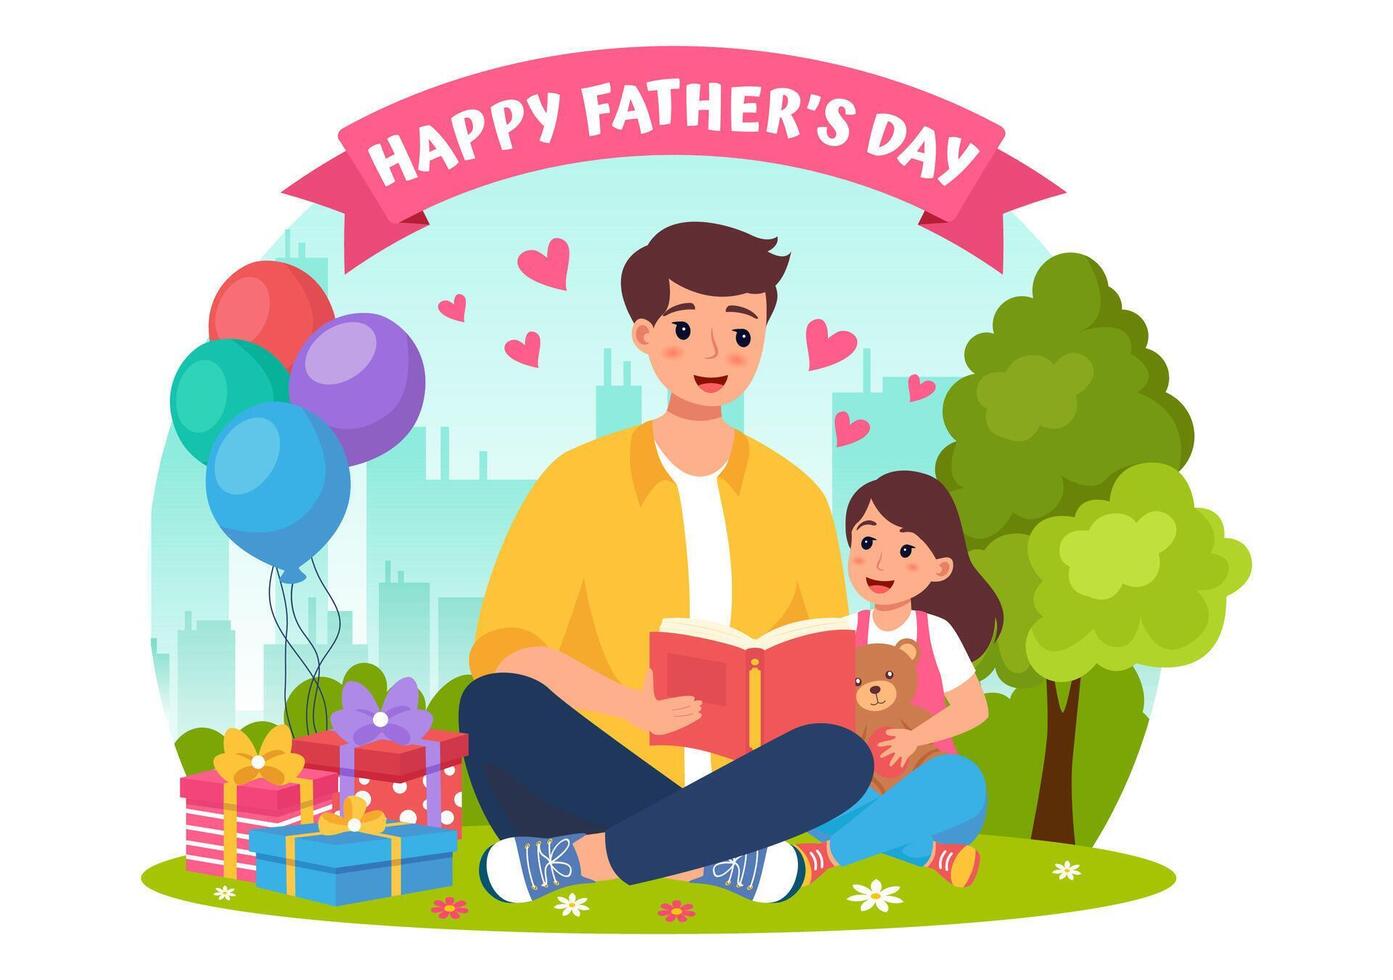 gelukkig vaders dag vector illustratie met vader en zijn zoon of dochter spelen samen in vlak kinderen tekenfilm achtergrond ontwerp